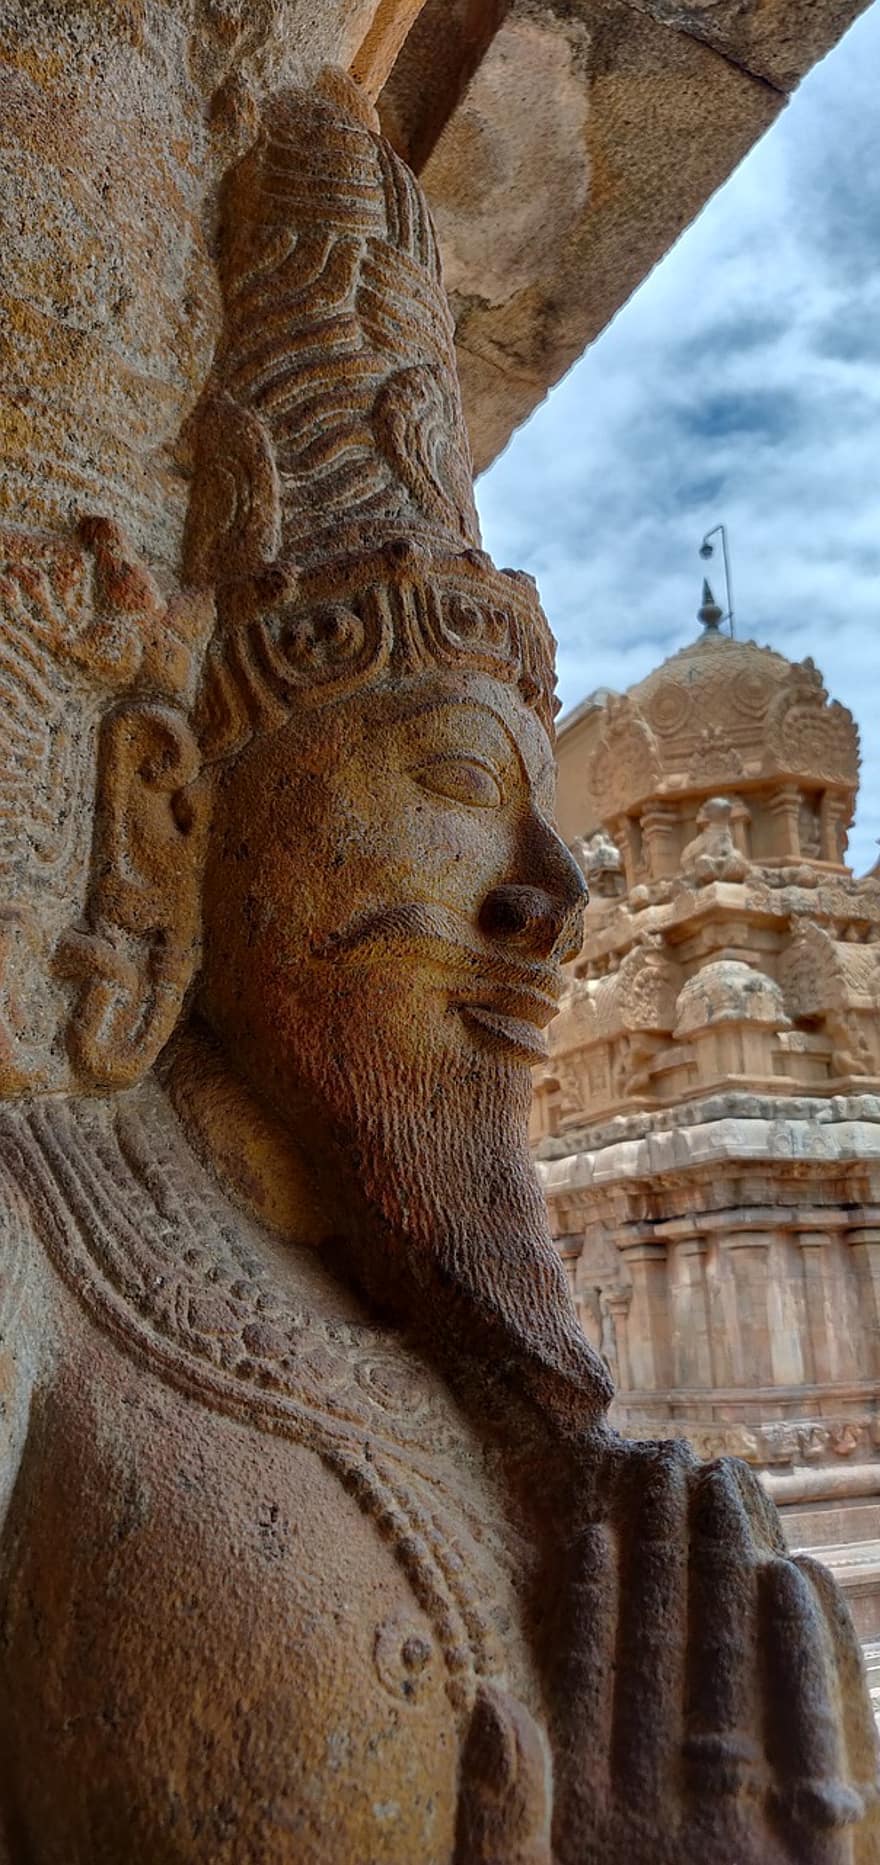 arkitektur, skulptur, staty, indien, tamilnadu, historisk, tempel, shiva, stort tempel, Thanjavur, kulturer